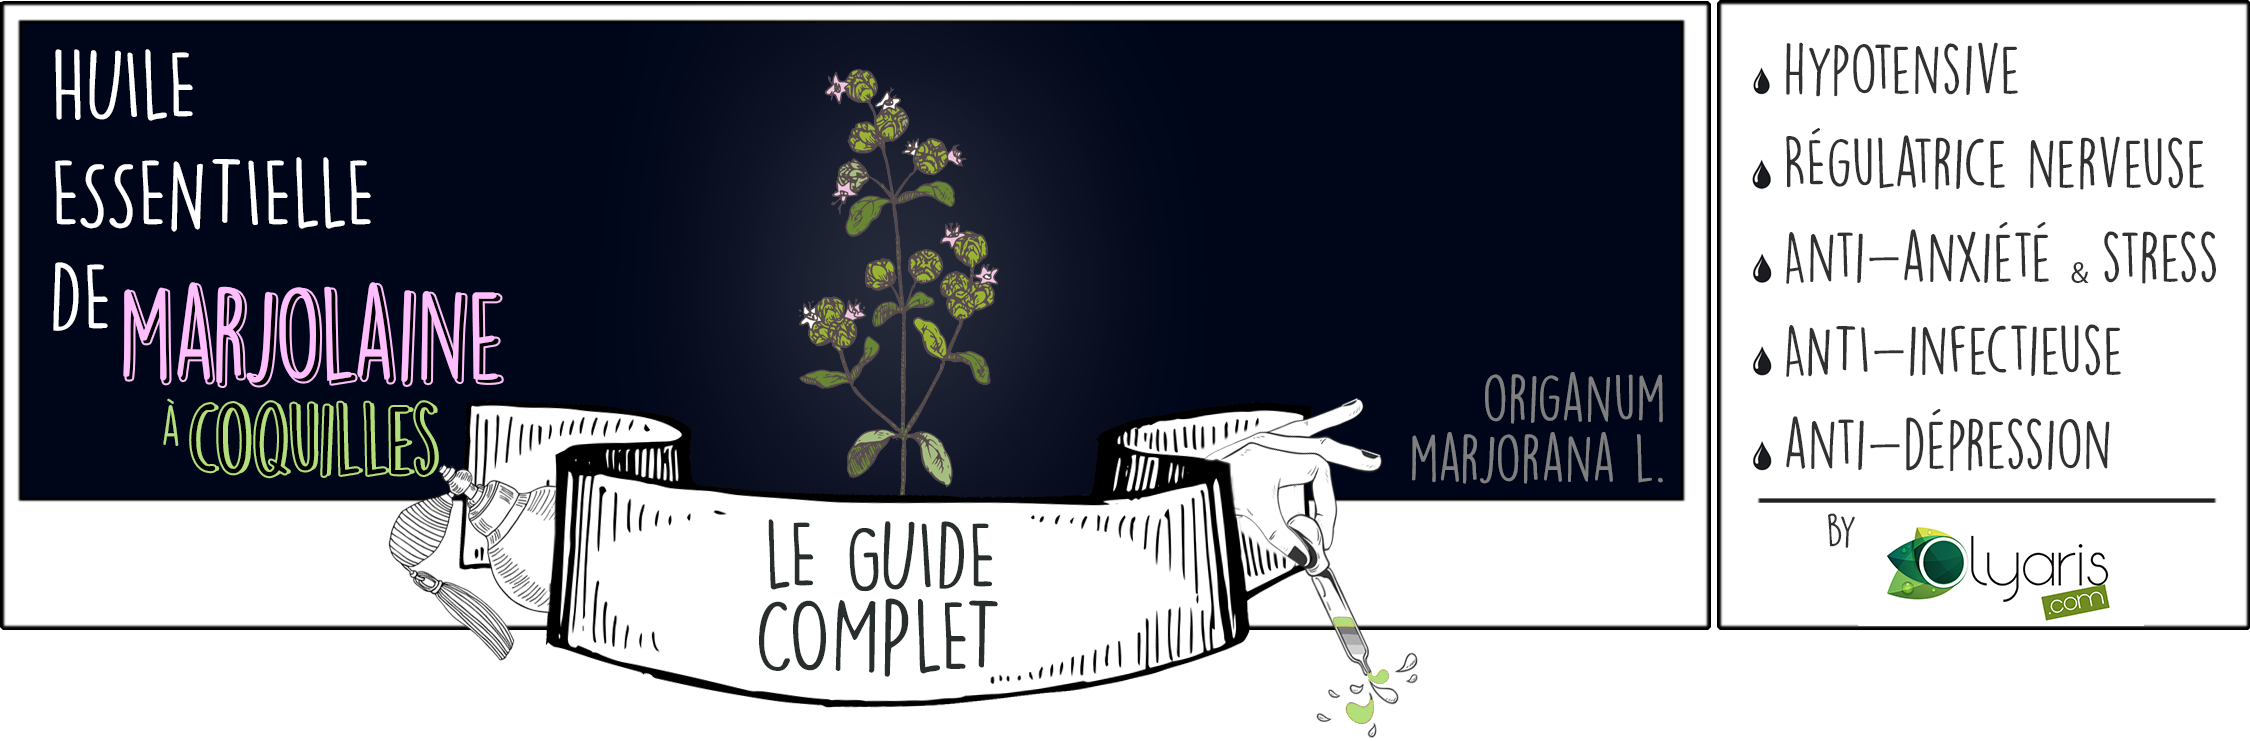 Huile Essentielle de Marjolaine à Coquilles : le Guide Complet par Olyaris